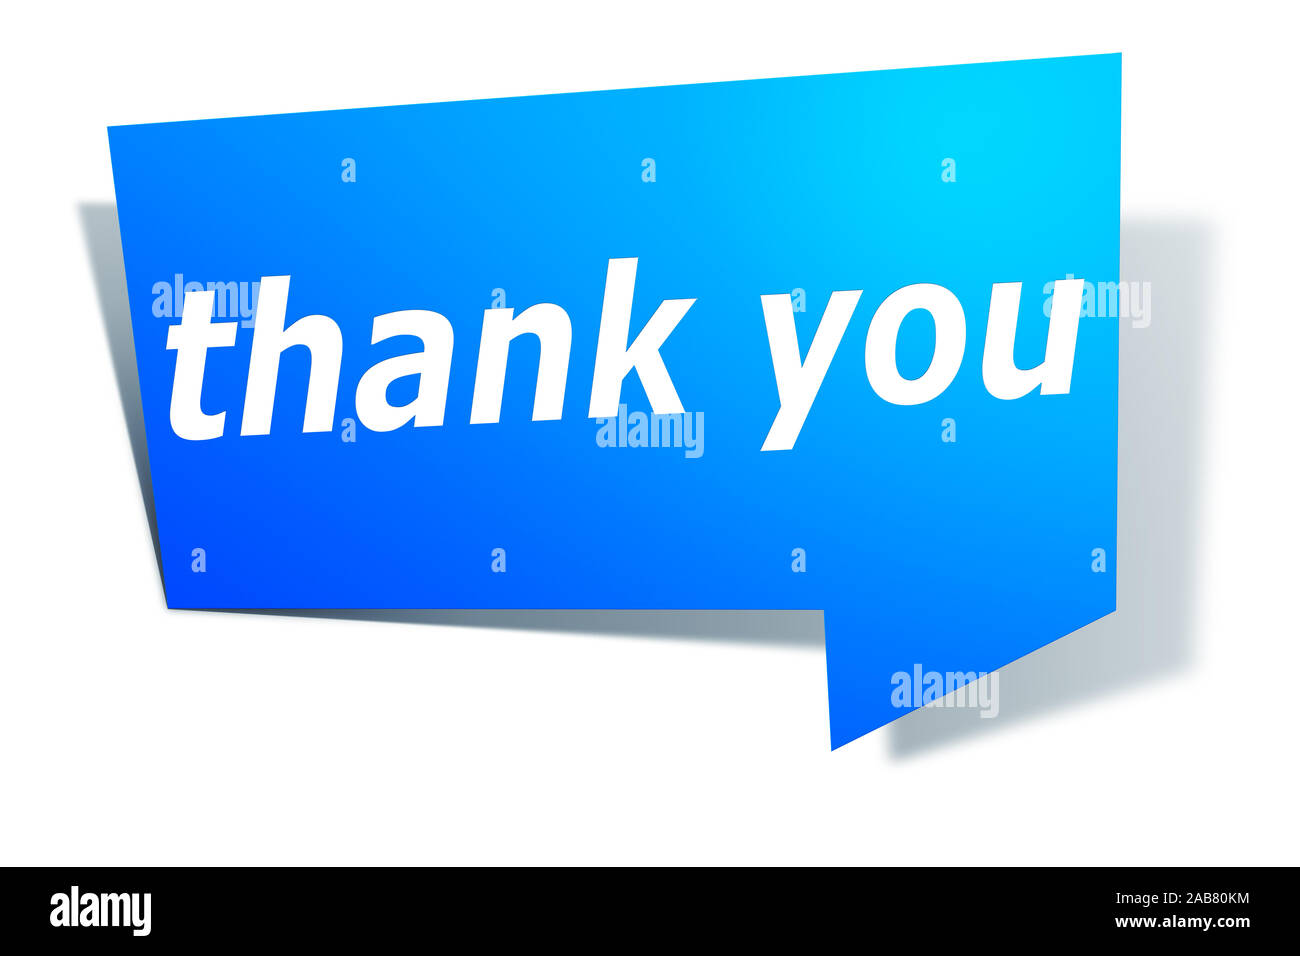 Ein blaues Etikett vor weissem Hintergrund mit der Aufschrift: "thank you" Stock Photo